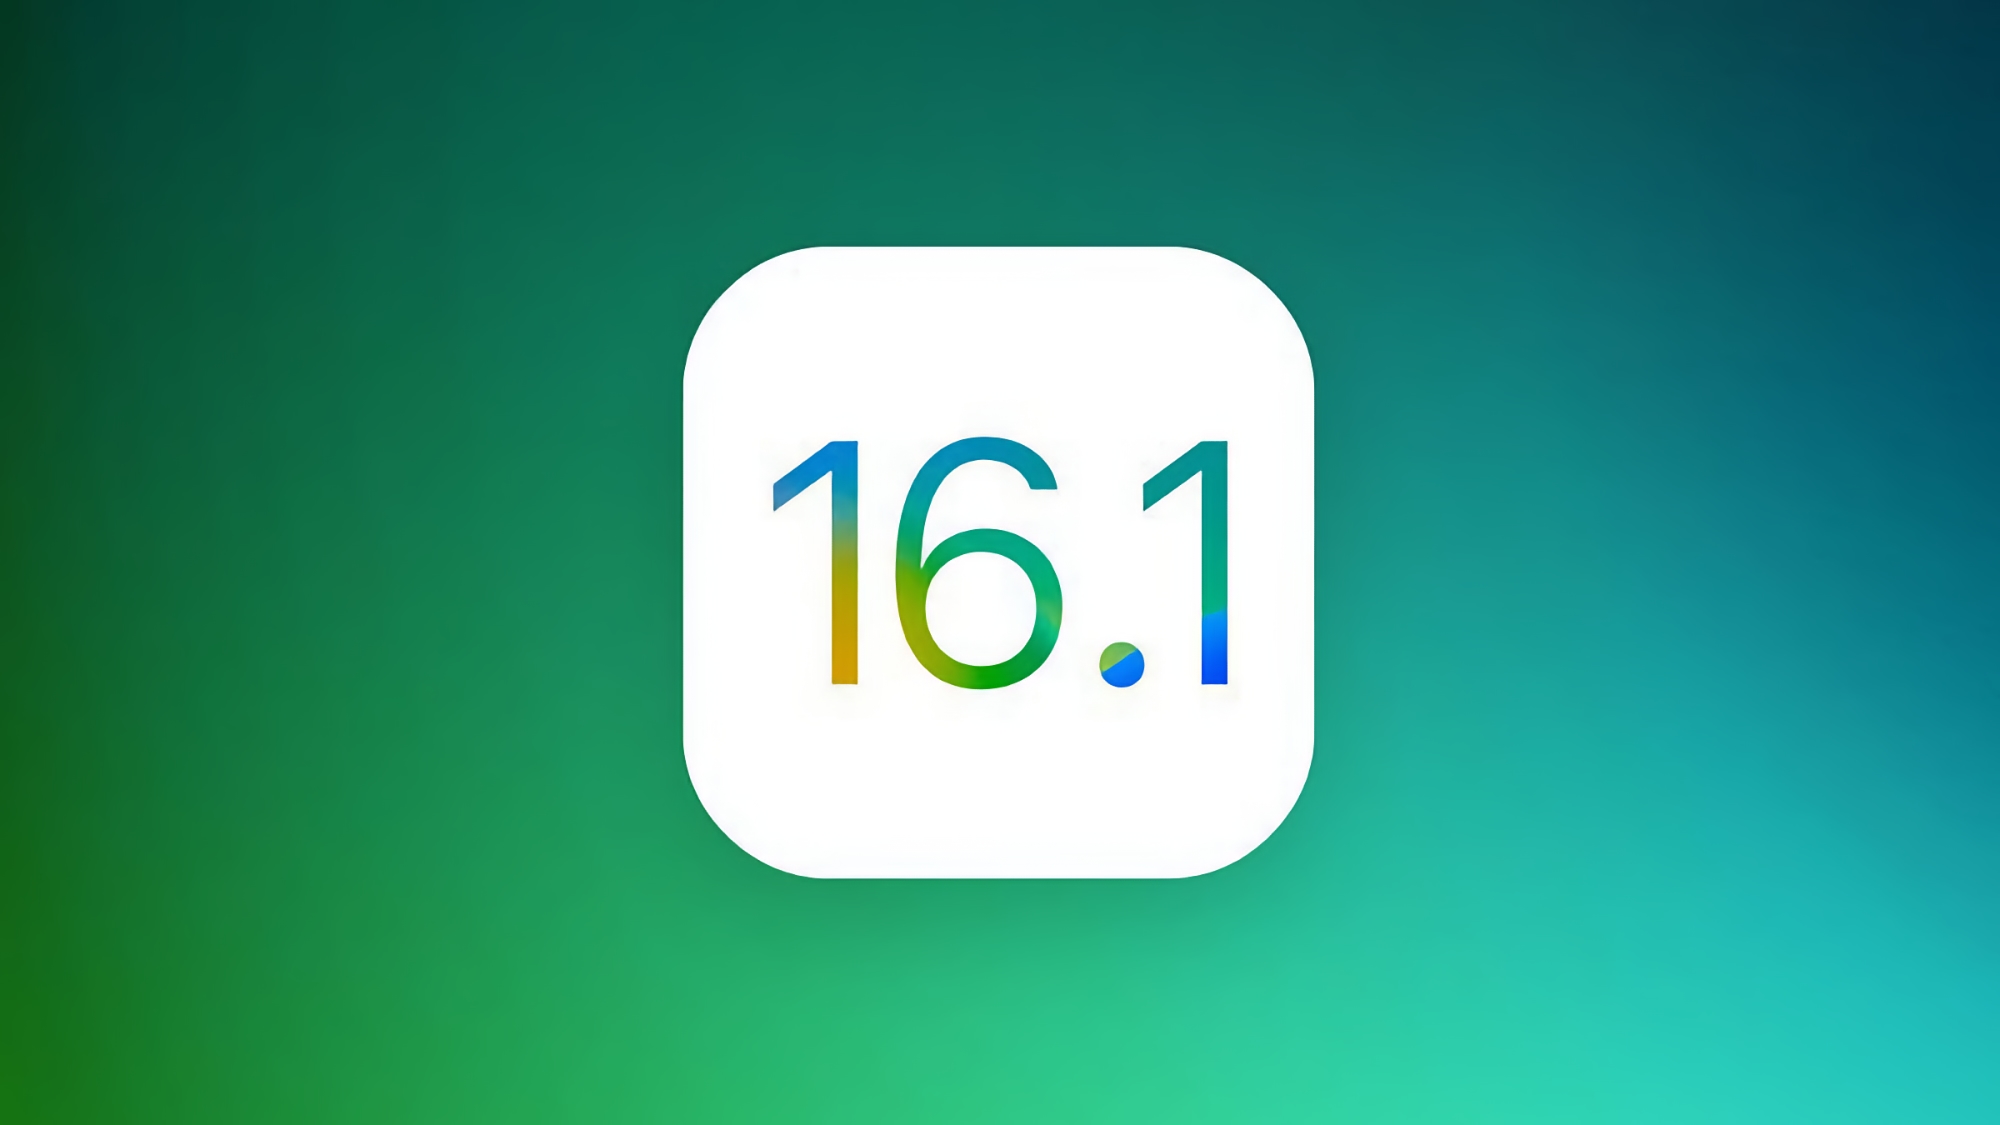 Pas seulement iPadOS 16.1 et macOS Ventura : Apple dévoilera une autre version stable d'iOS 16.1 le 24 octobre